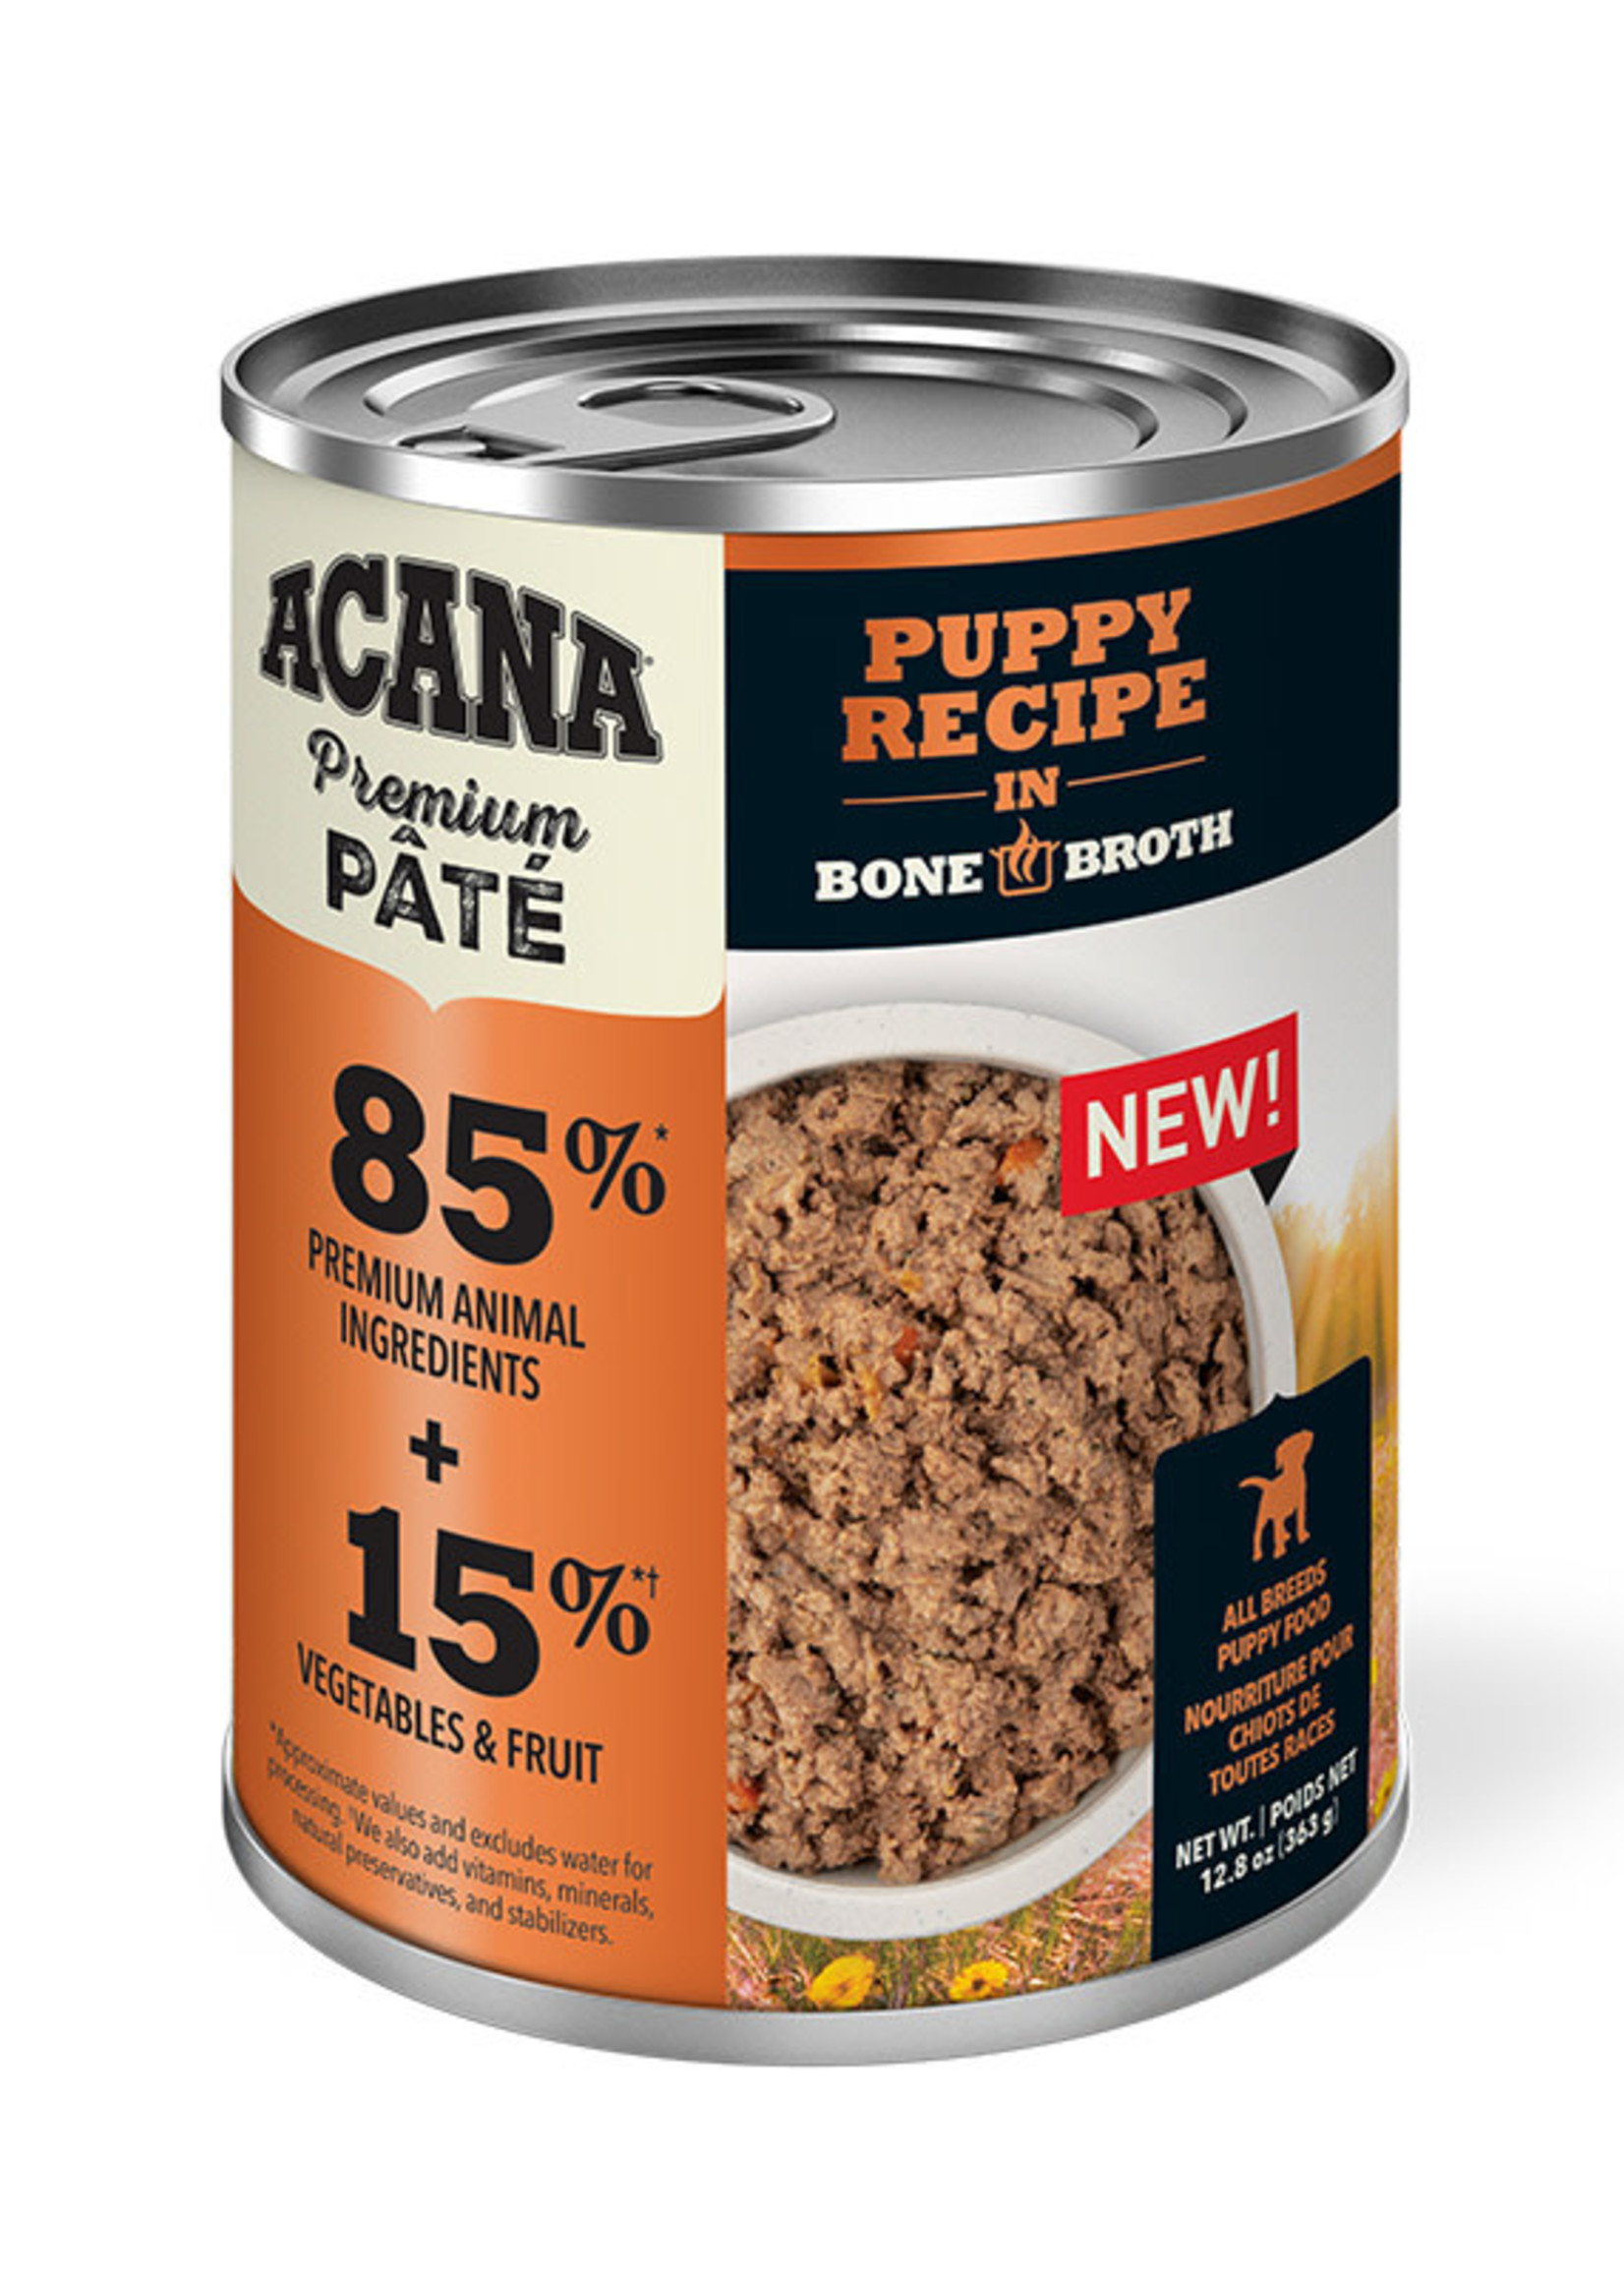 Acana Dog Puppy Recipe in Bone Broth 363g